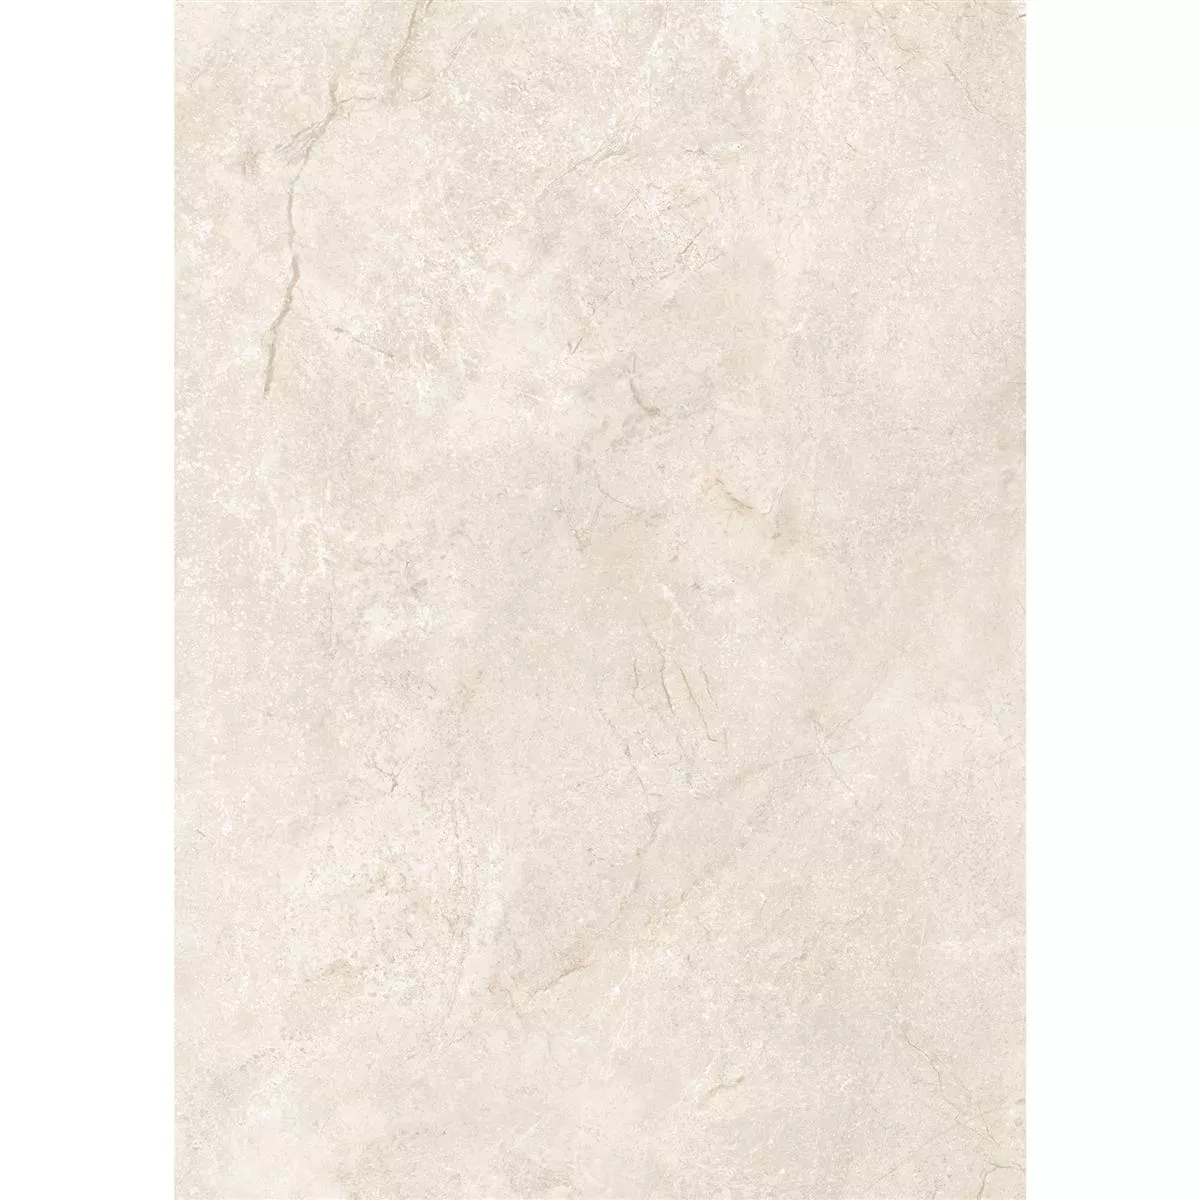 Πρότυπο από Πλακάκια Δαπέδου Pangea Μαρμάρινη Όψη Παγωμένος Cream 60x120cm